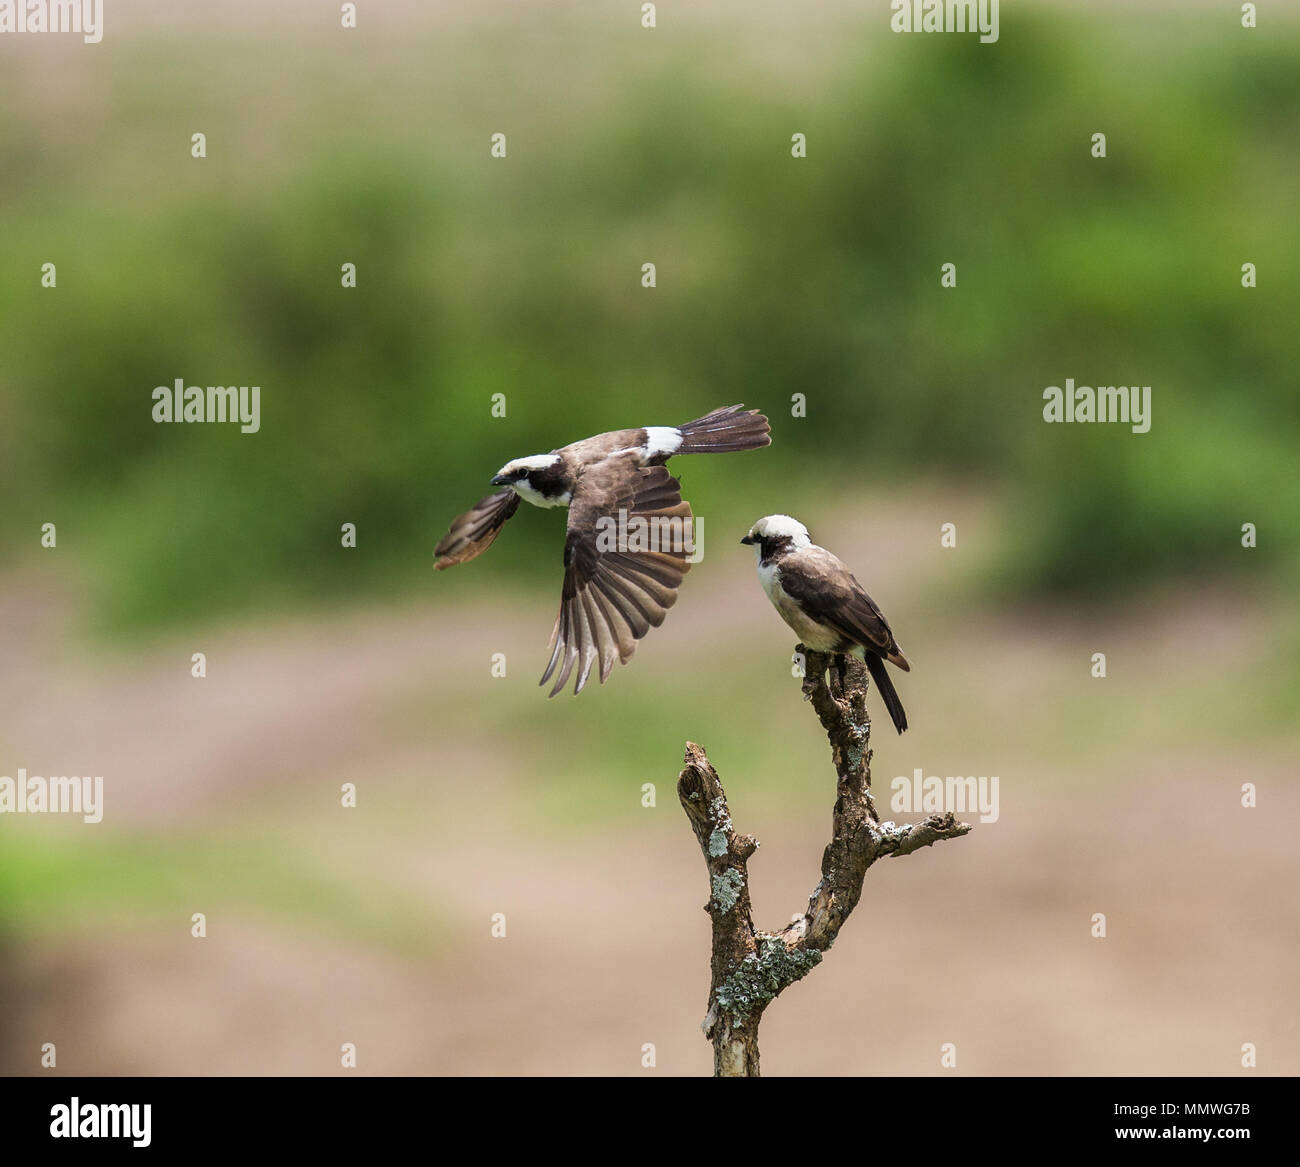 Ausgezeichnete Starling sitzt auf einem Zweig von Acacia. Afrika. Kenia. Tansania. Serengeti National Park. Stockfoto